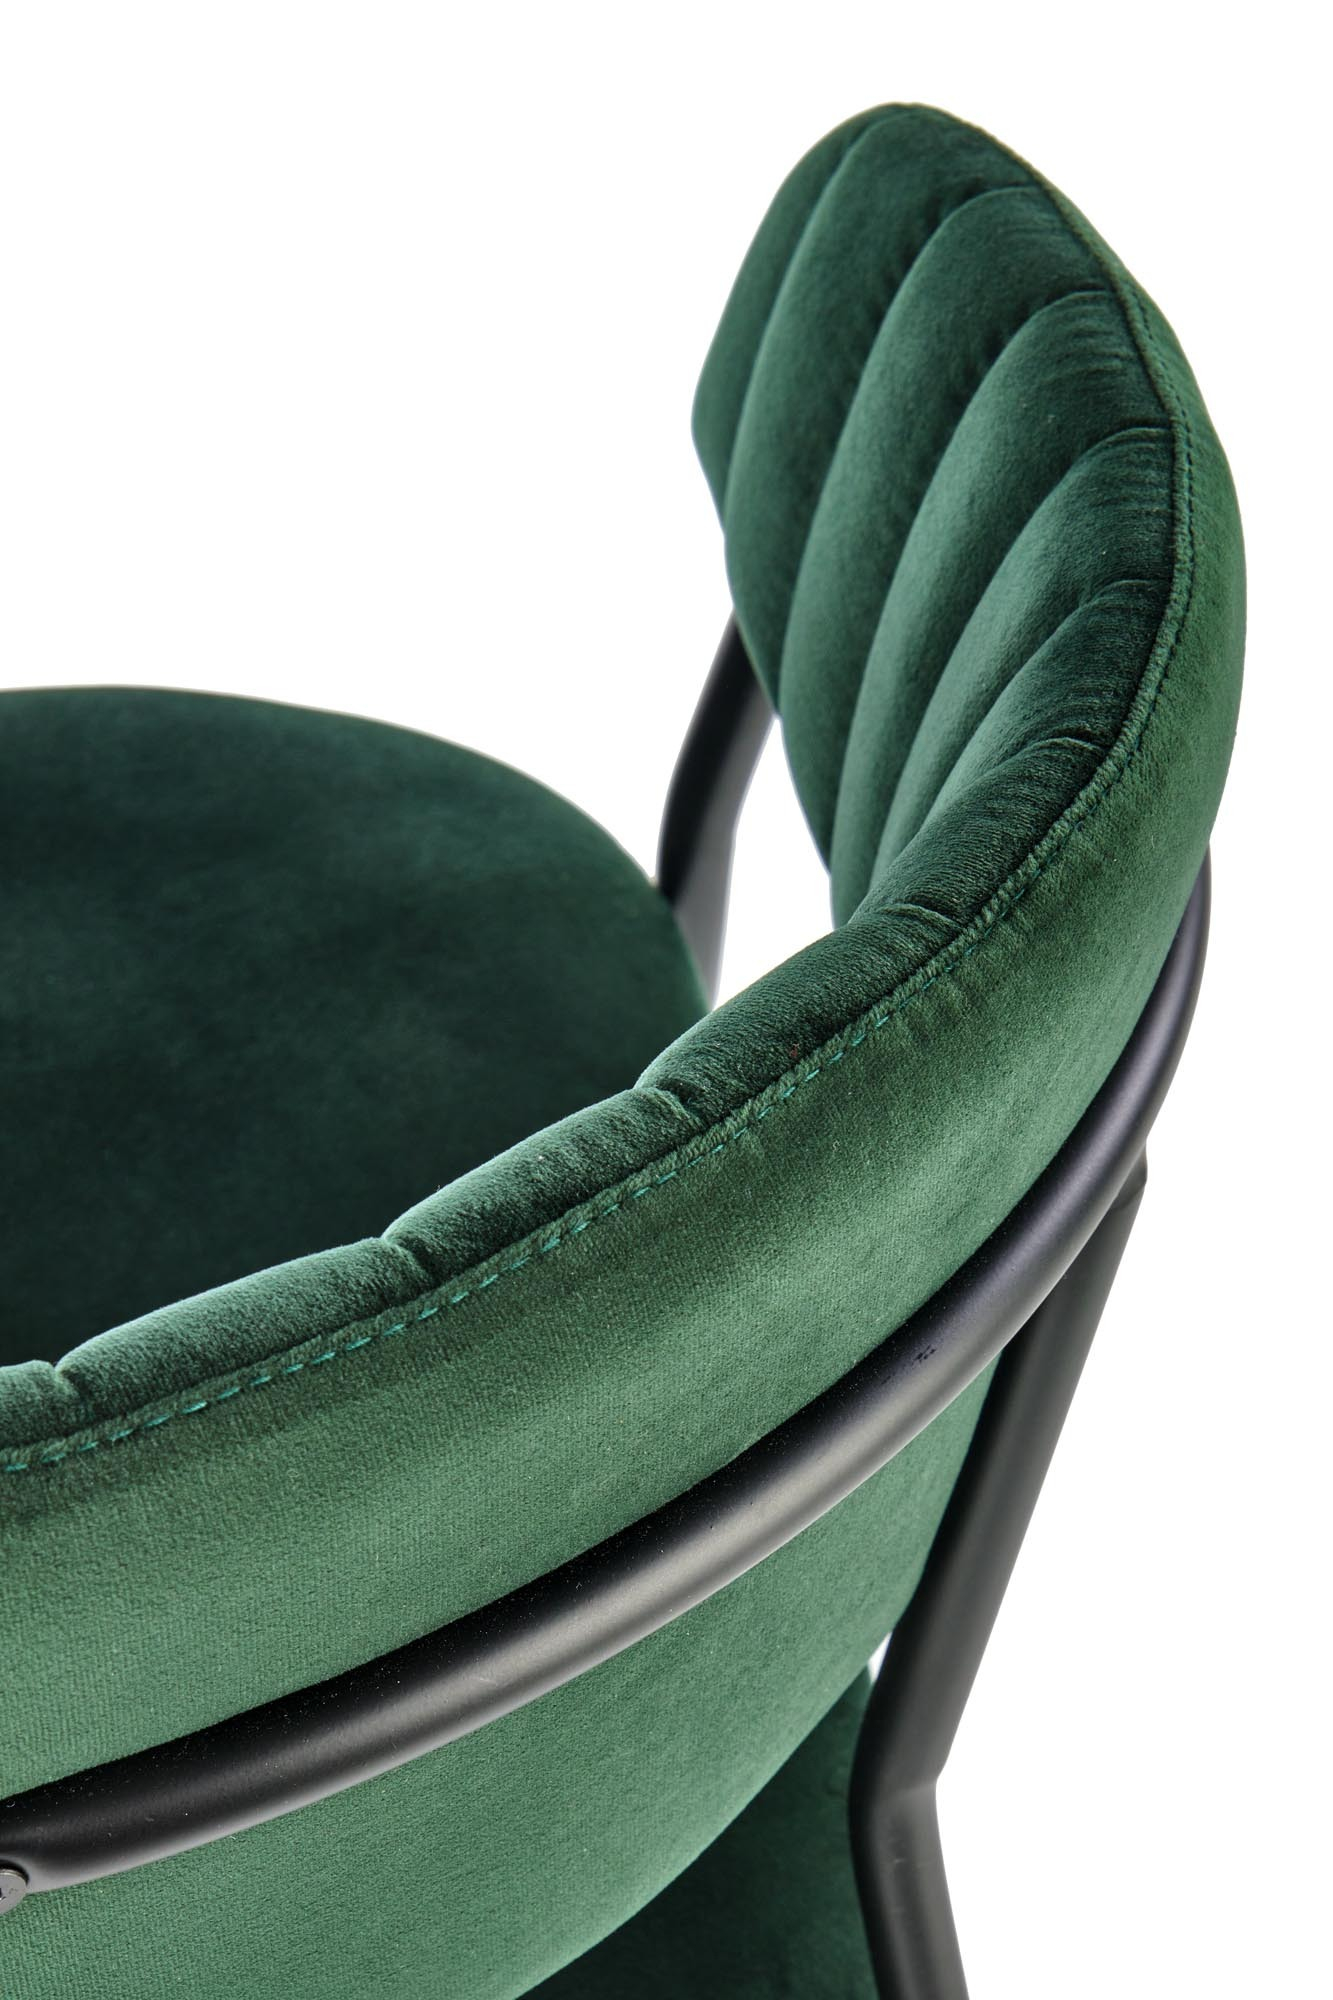 K426 krzesło ciemny zielony